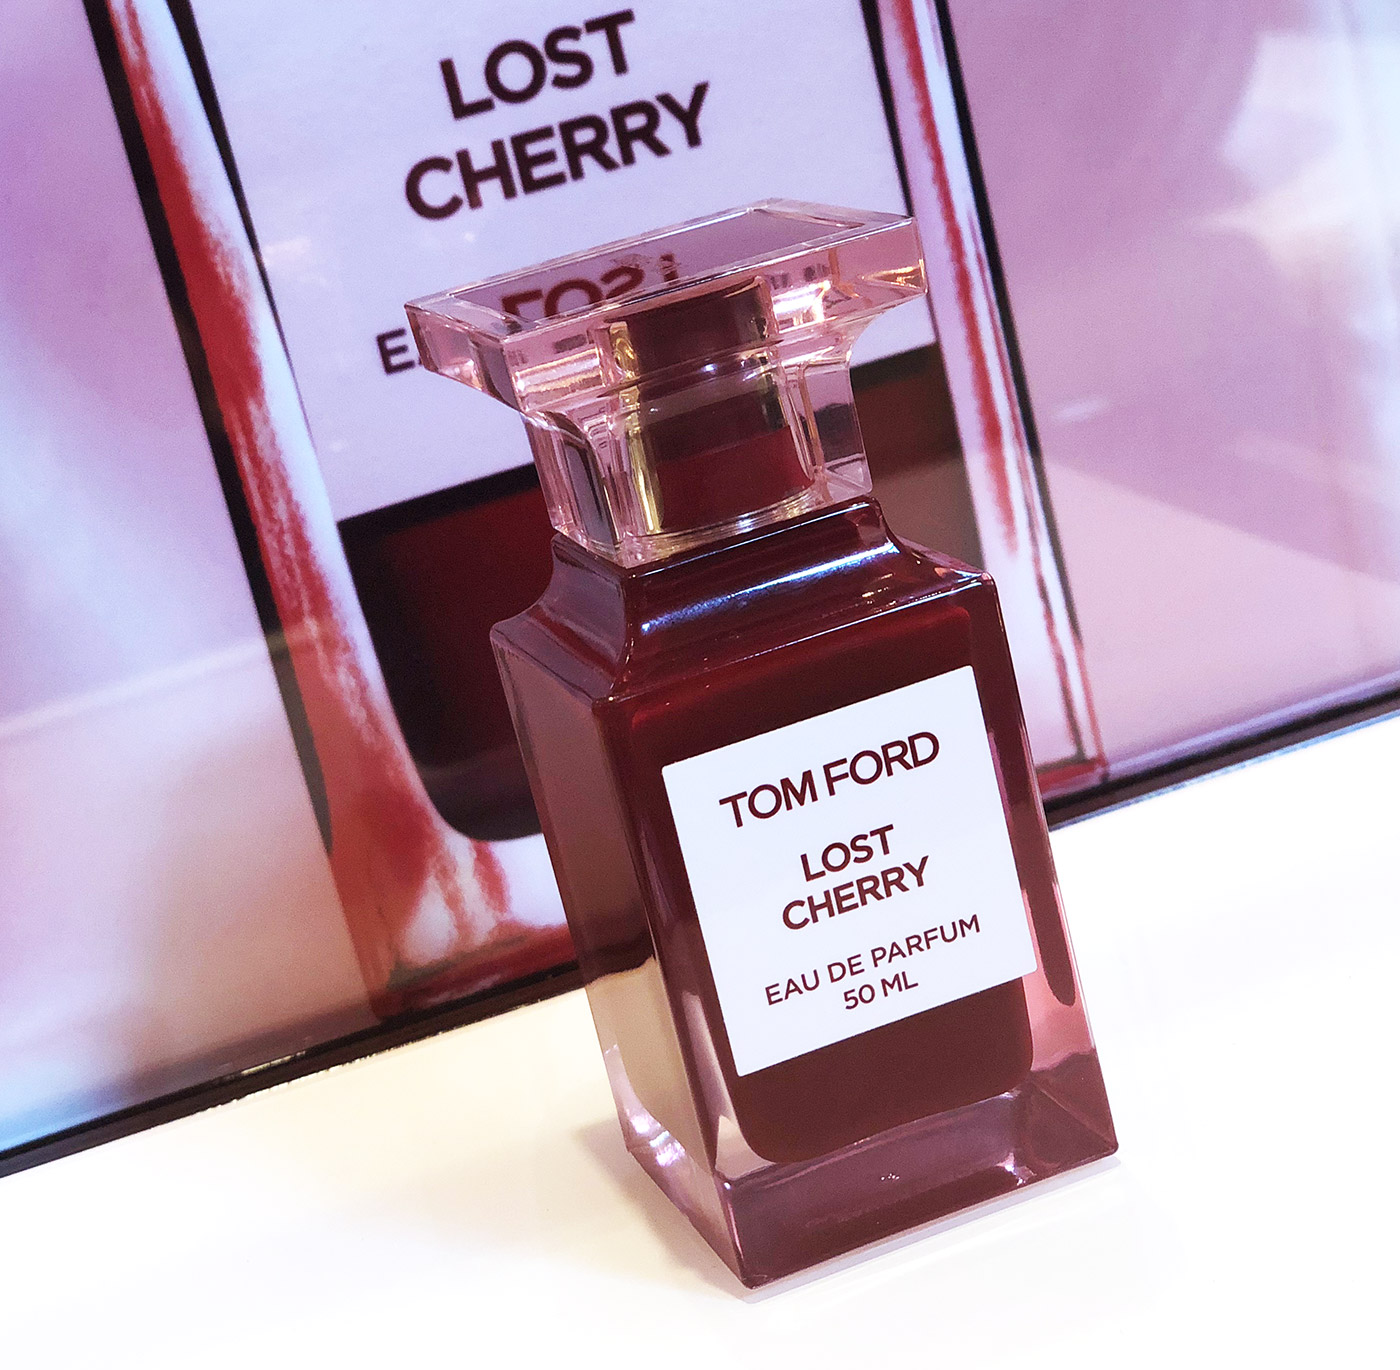 Nuevo de Tom Ford: Lost Cherry ~ Noticias de Fragancias